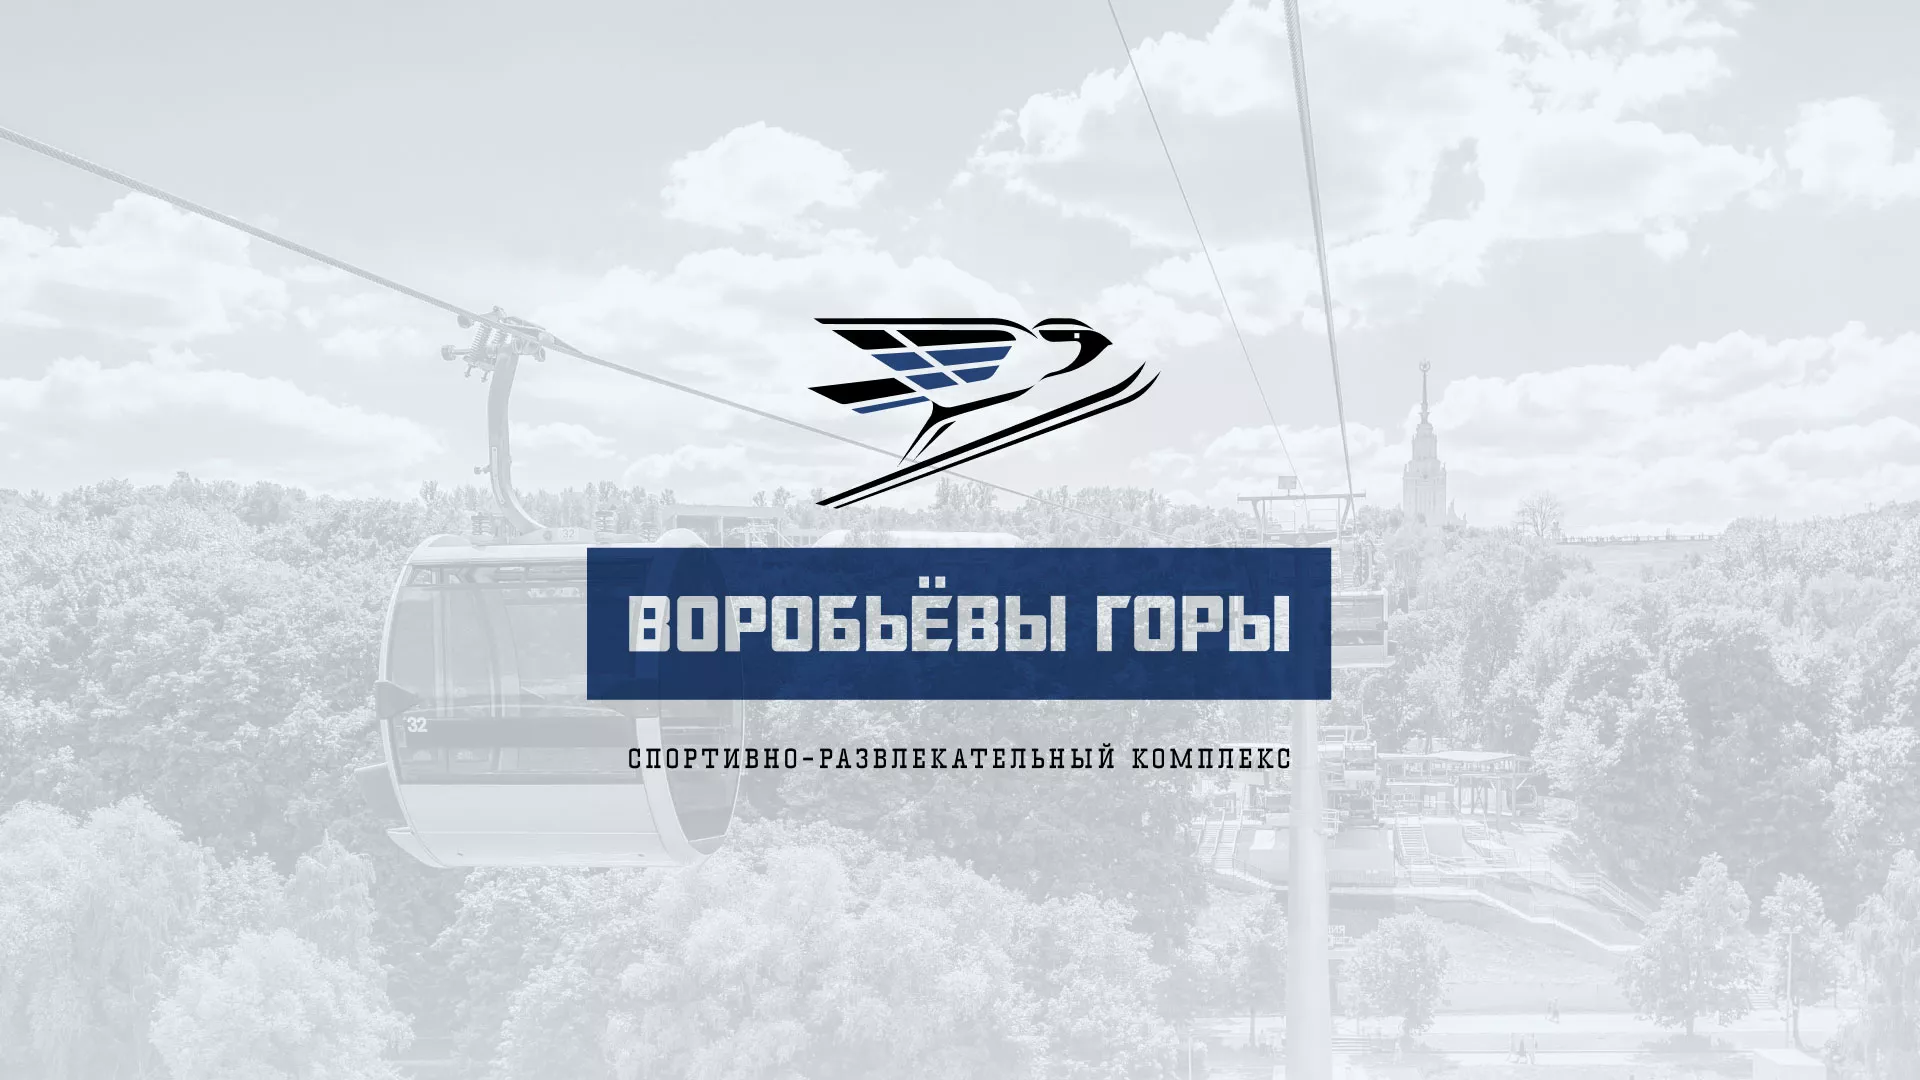 Разработка сайта в Наро-Фоминске для спортивно-развлекательного комплекса «Воробьёвы горы»